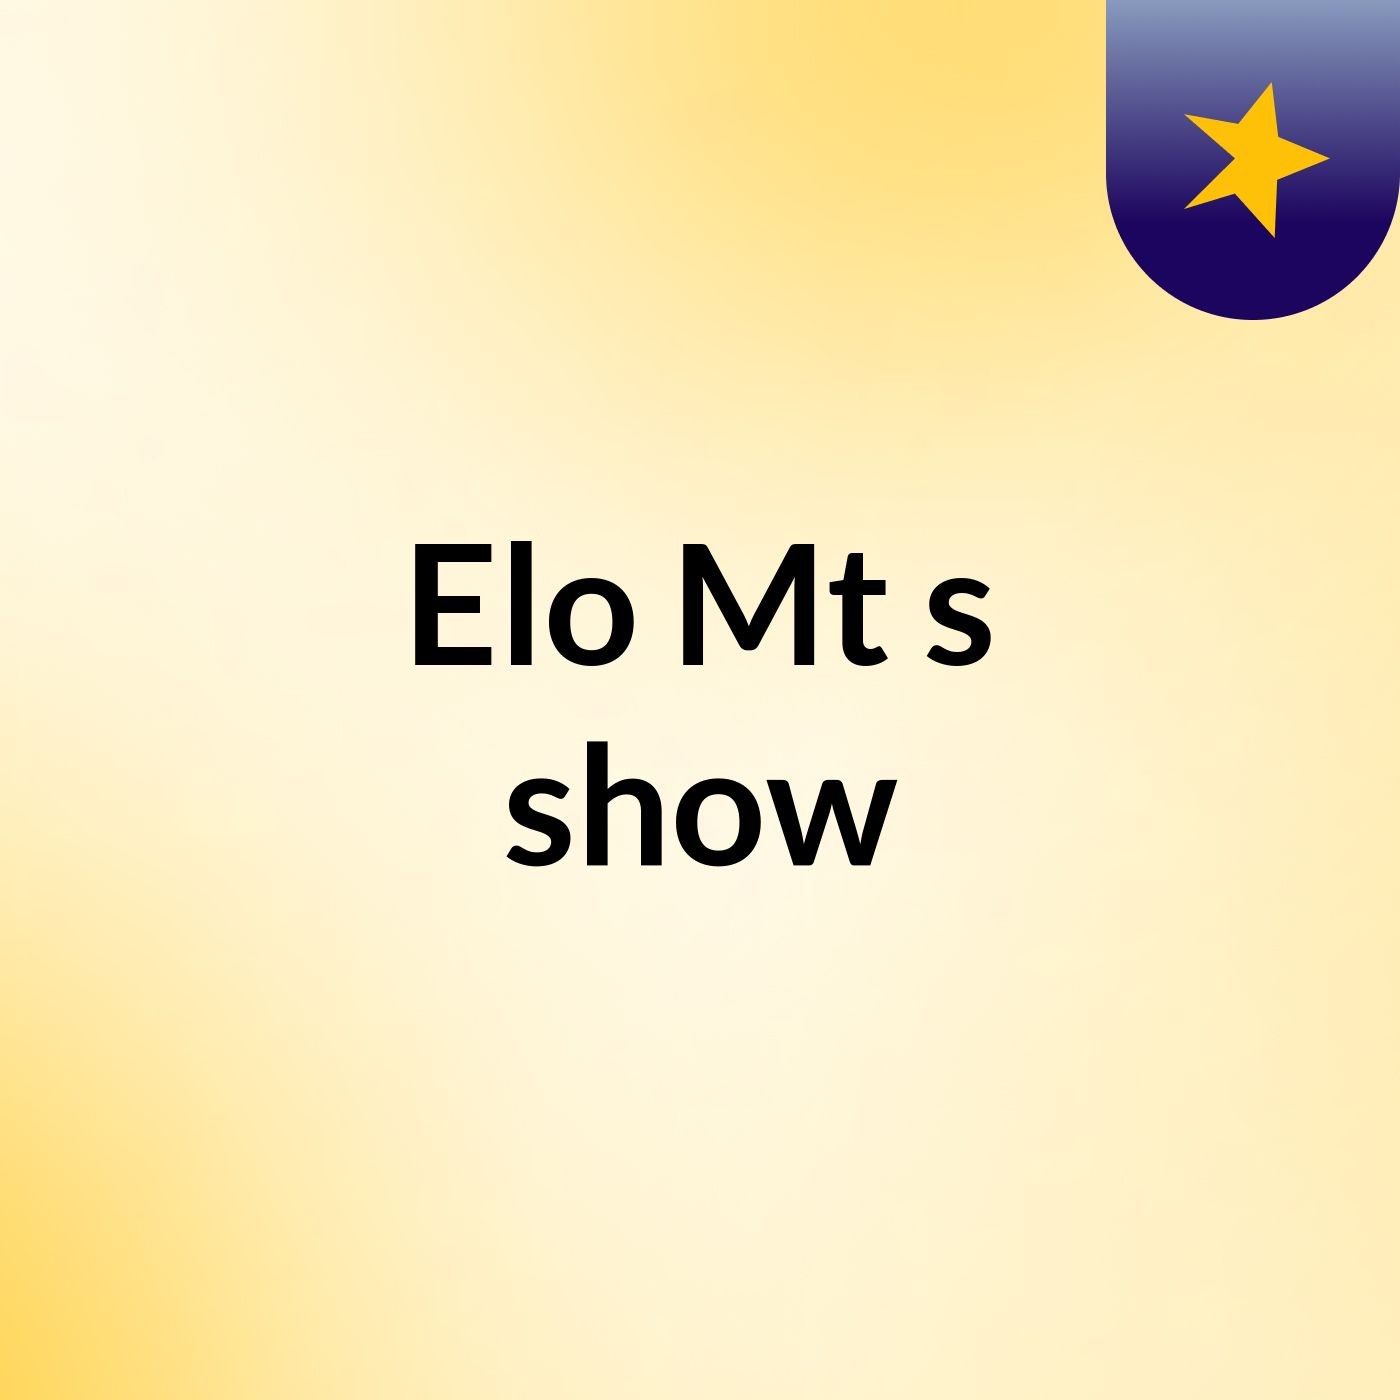 Elo Mt's show